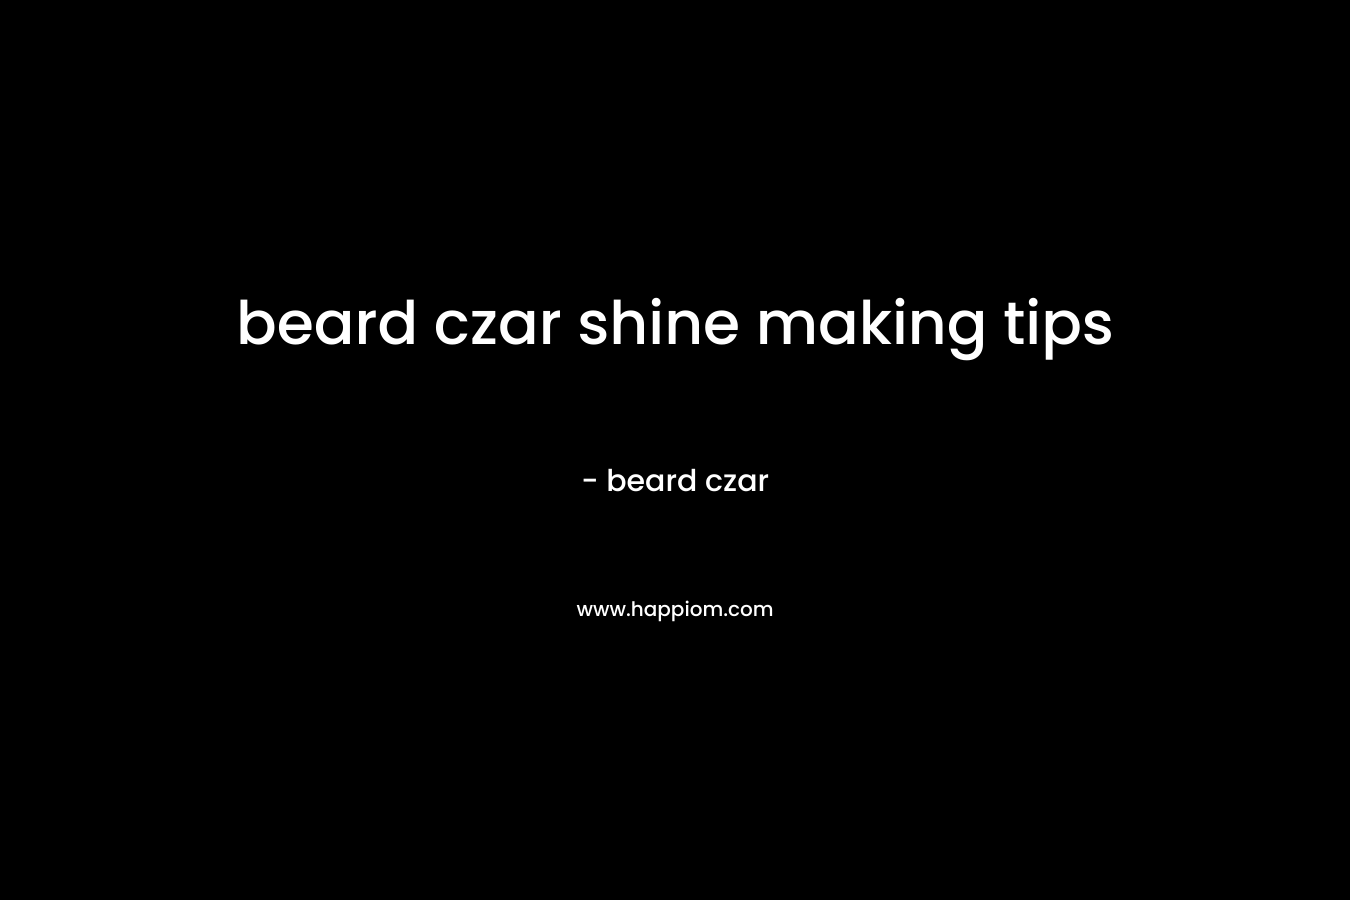 beard czar shine making tips